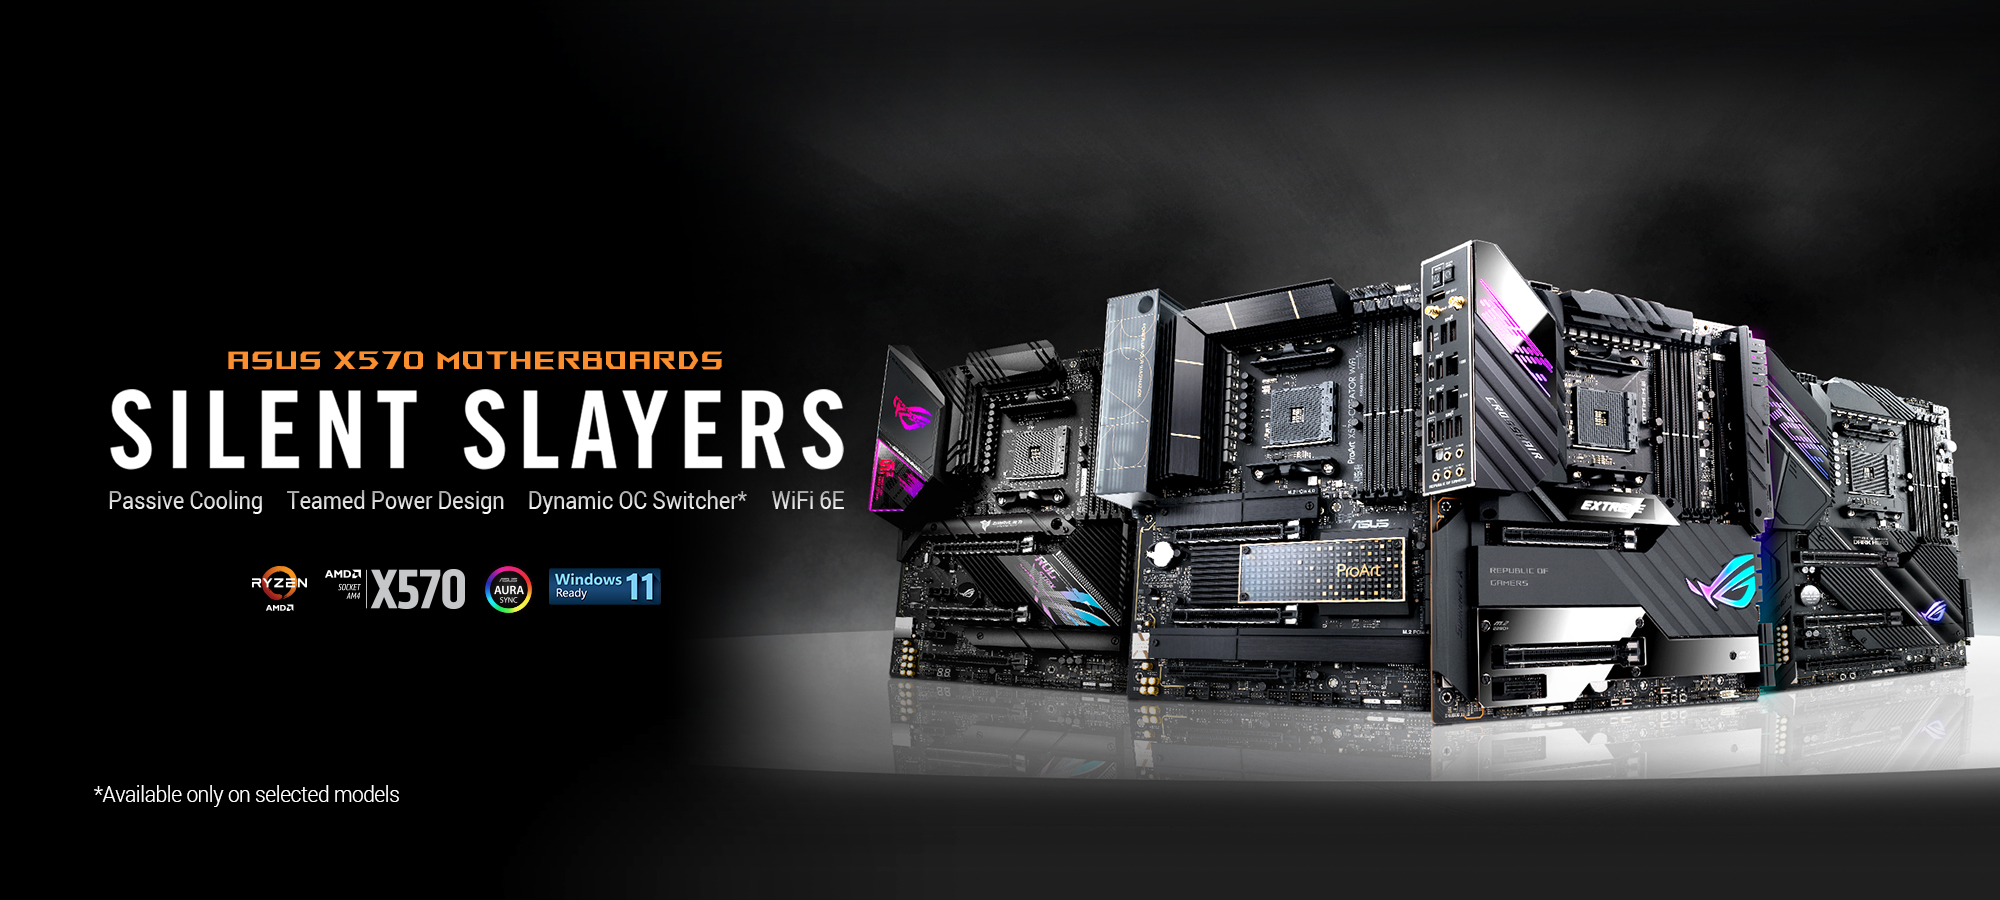 ASUS X570 Series - The best 2019 AMD Ryzen motherboards